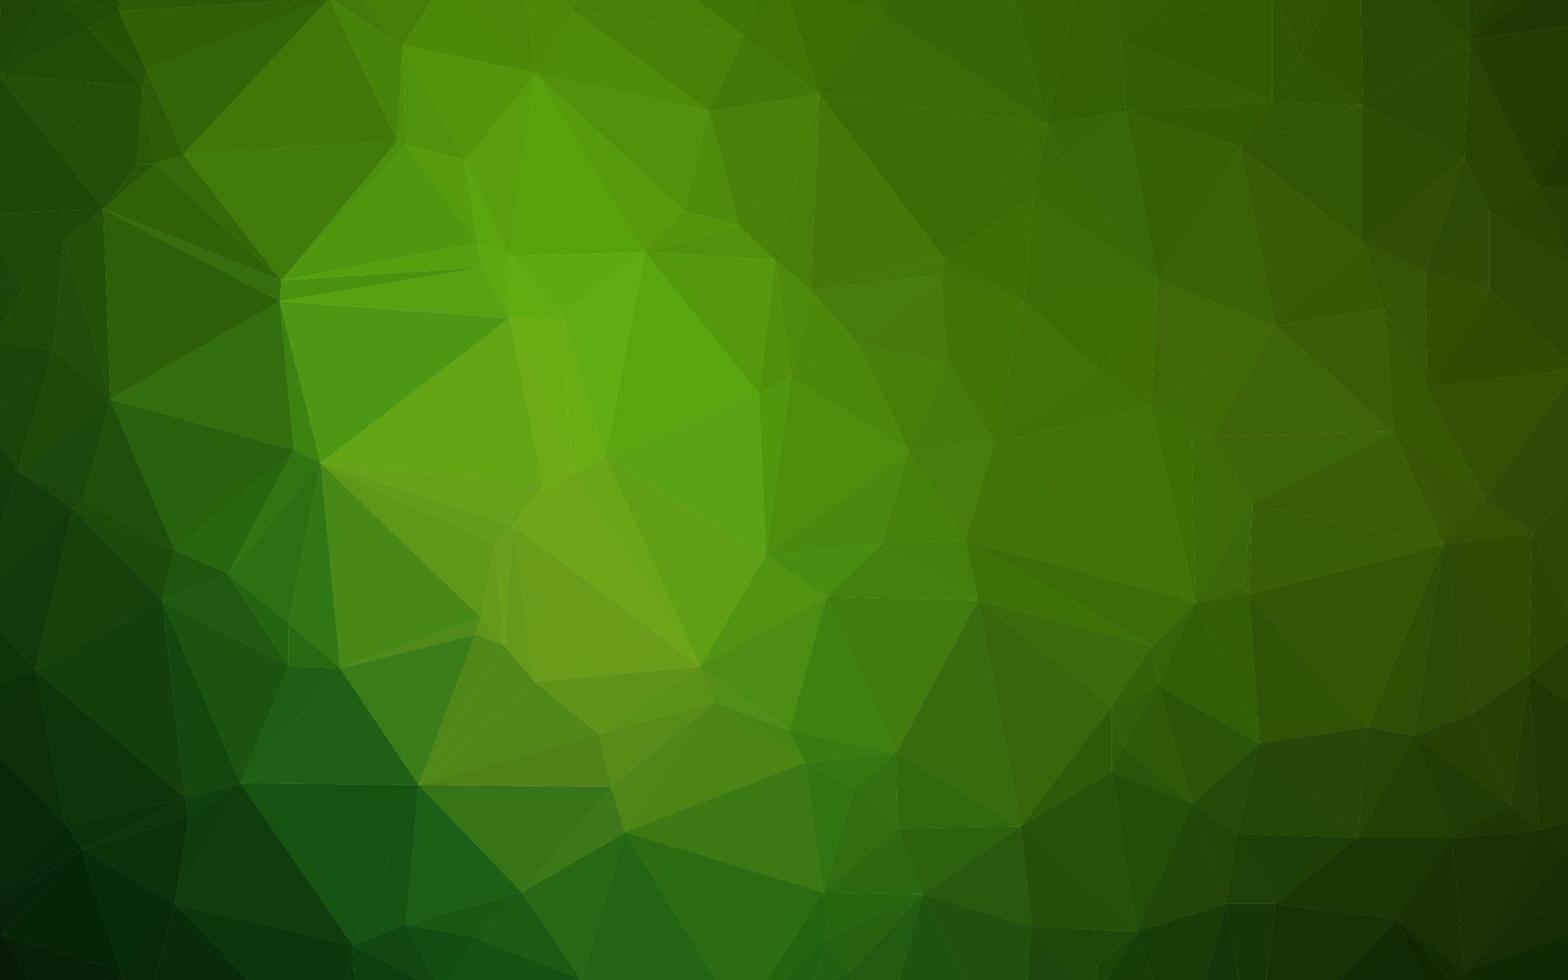 struttura poligonale astratta di vettore verde chiaro.